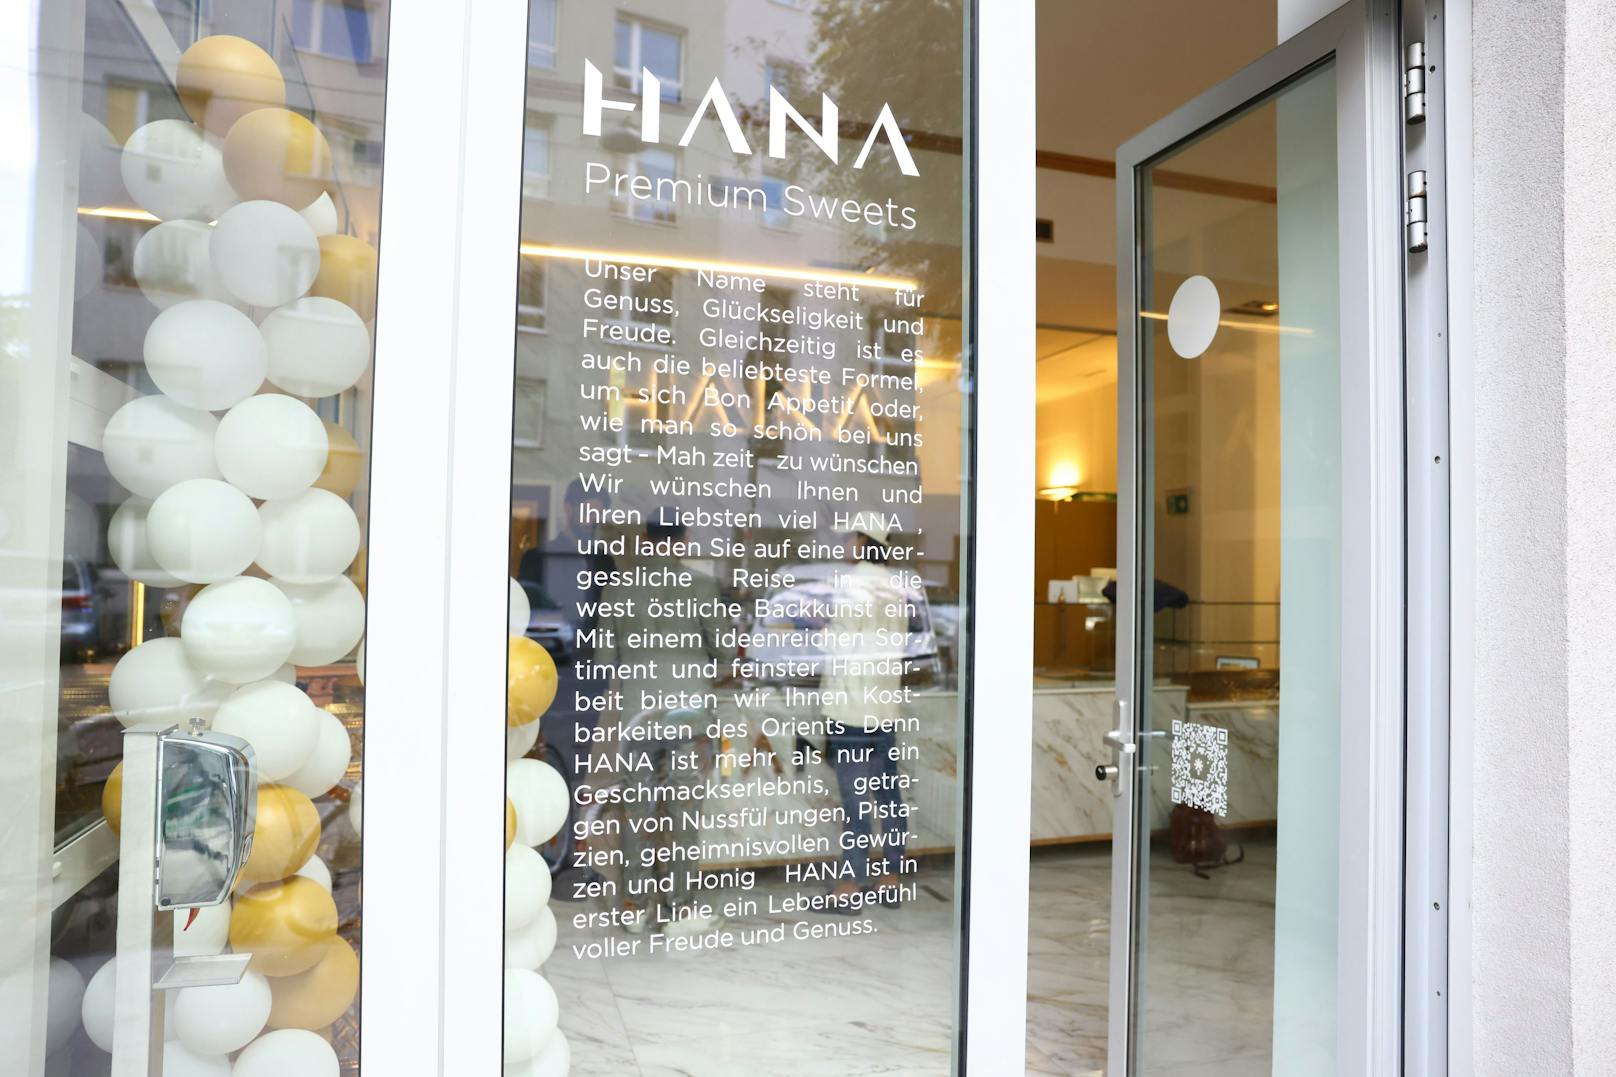 Hana ist ein Wort das soviel wie Genuss, Glückselig und Freude bedeutet und auch als Äquivalent zum "Mahlzeit!" verwendet wird